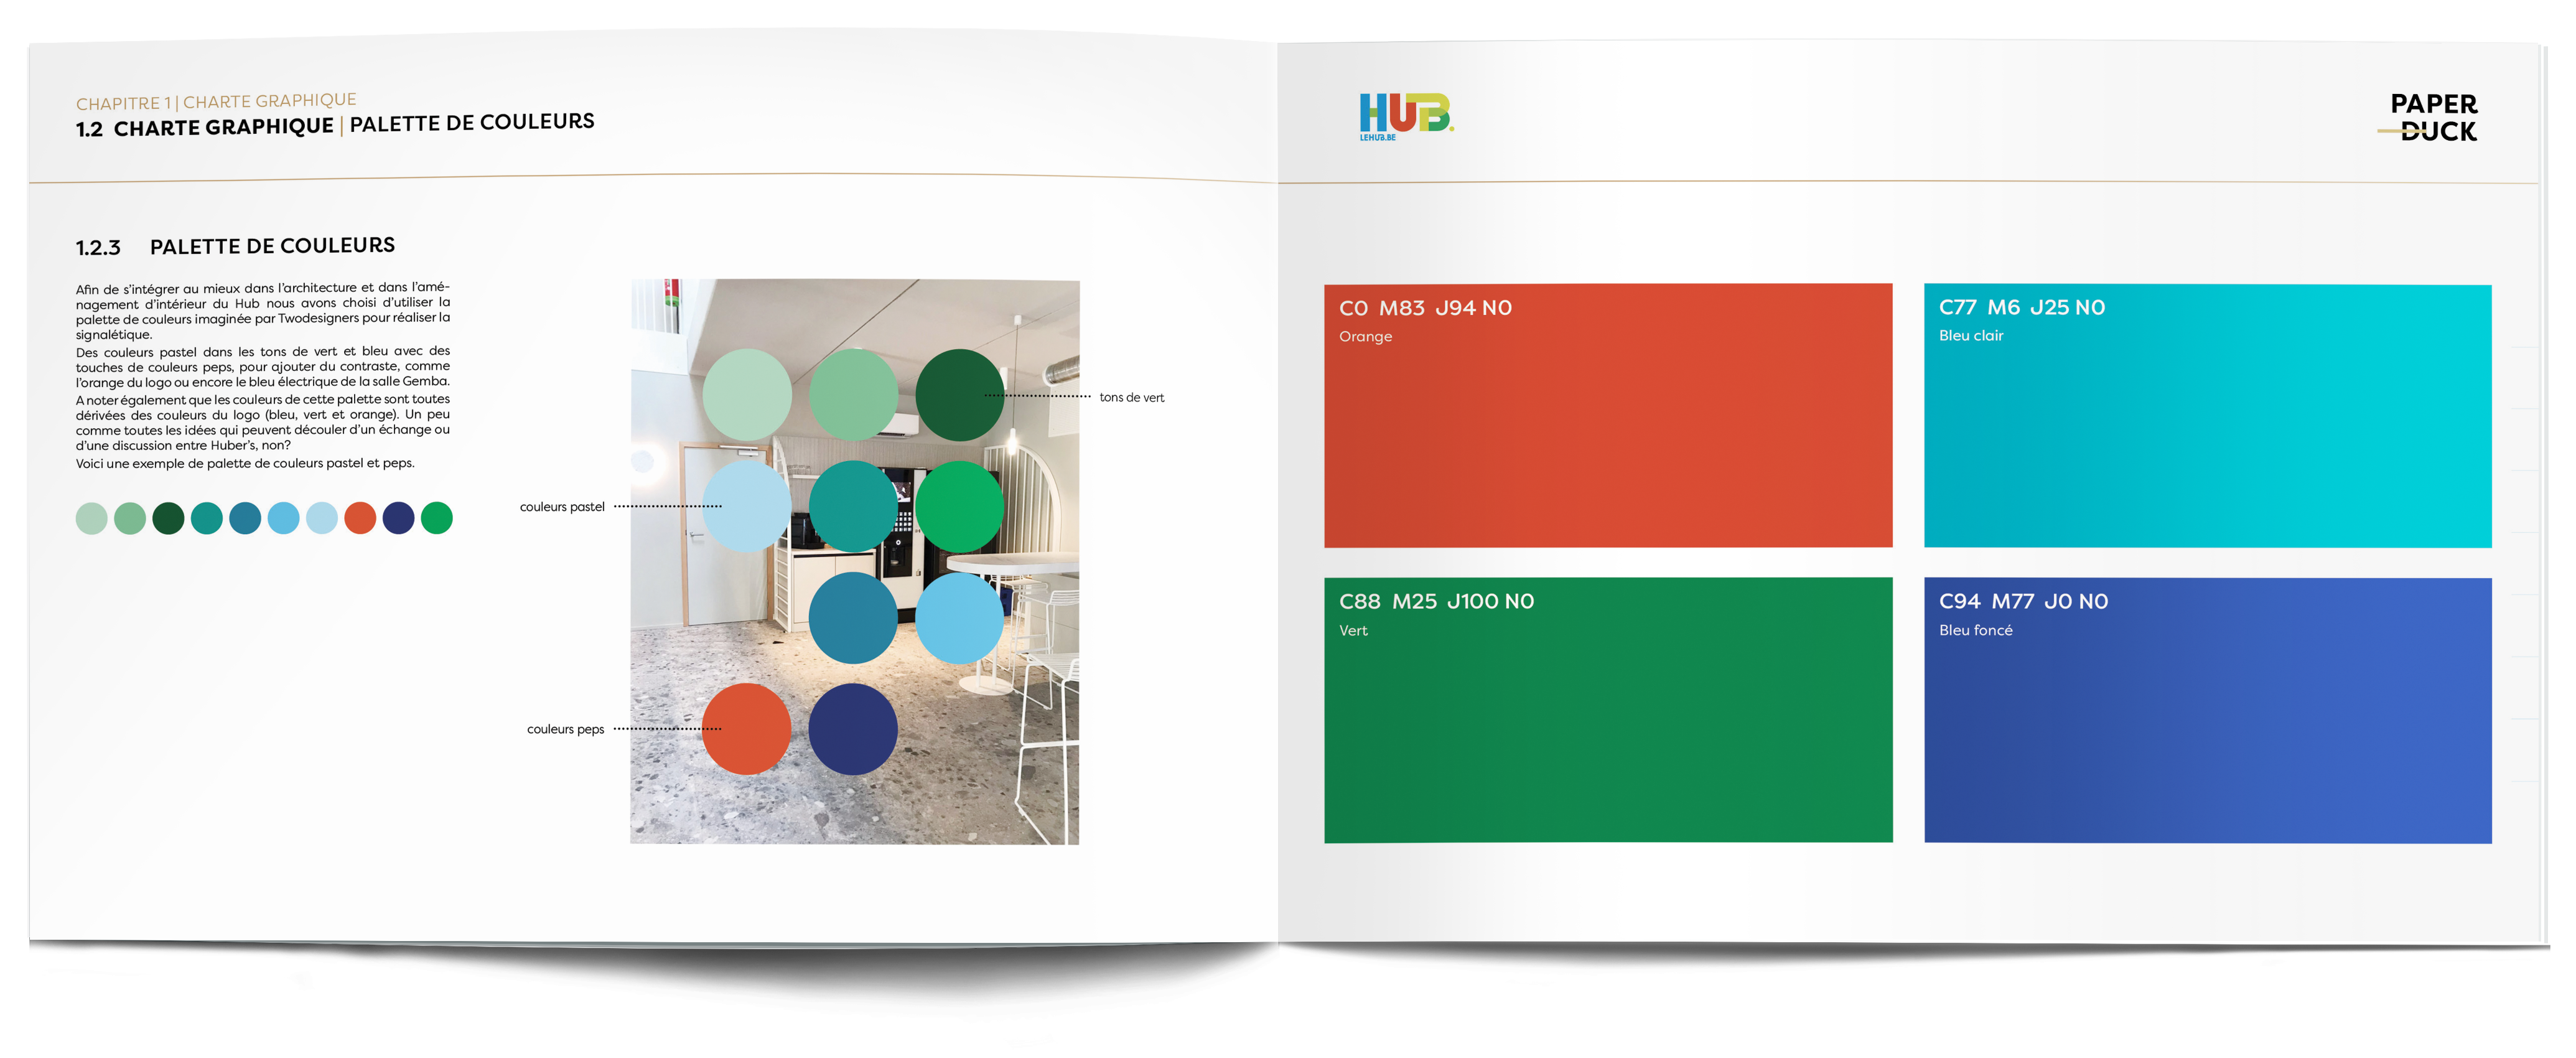 livre avec présentation de la charte graphique signalétique créée spécialement pour le hub: la palette de couleurs